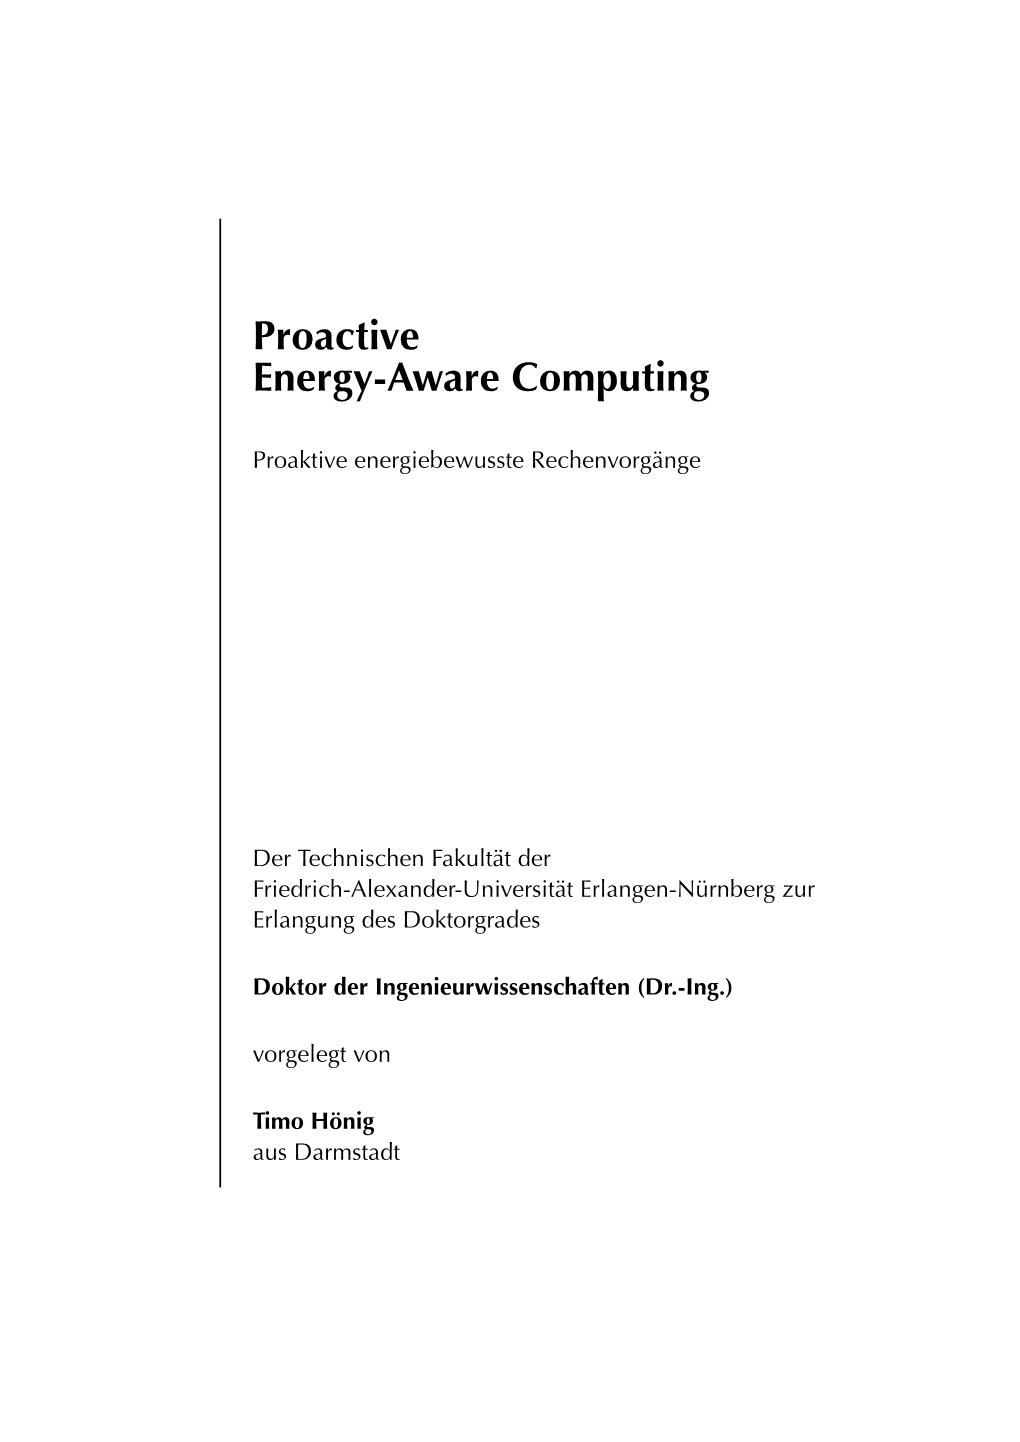 Proactive Energy-Aware Computing